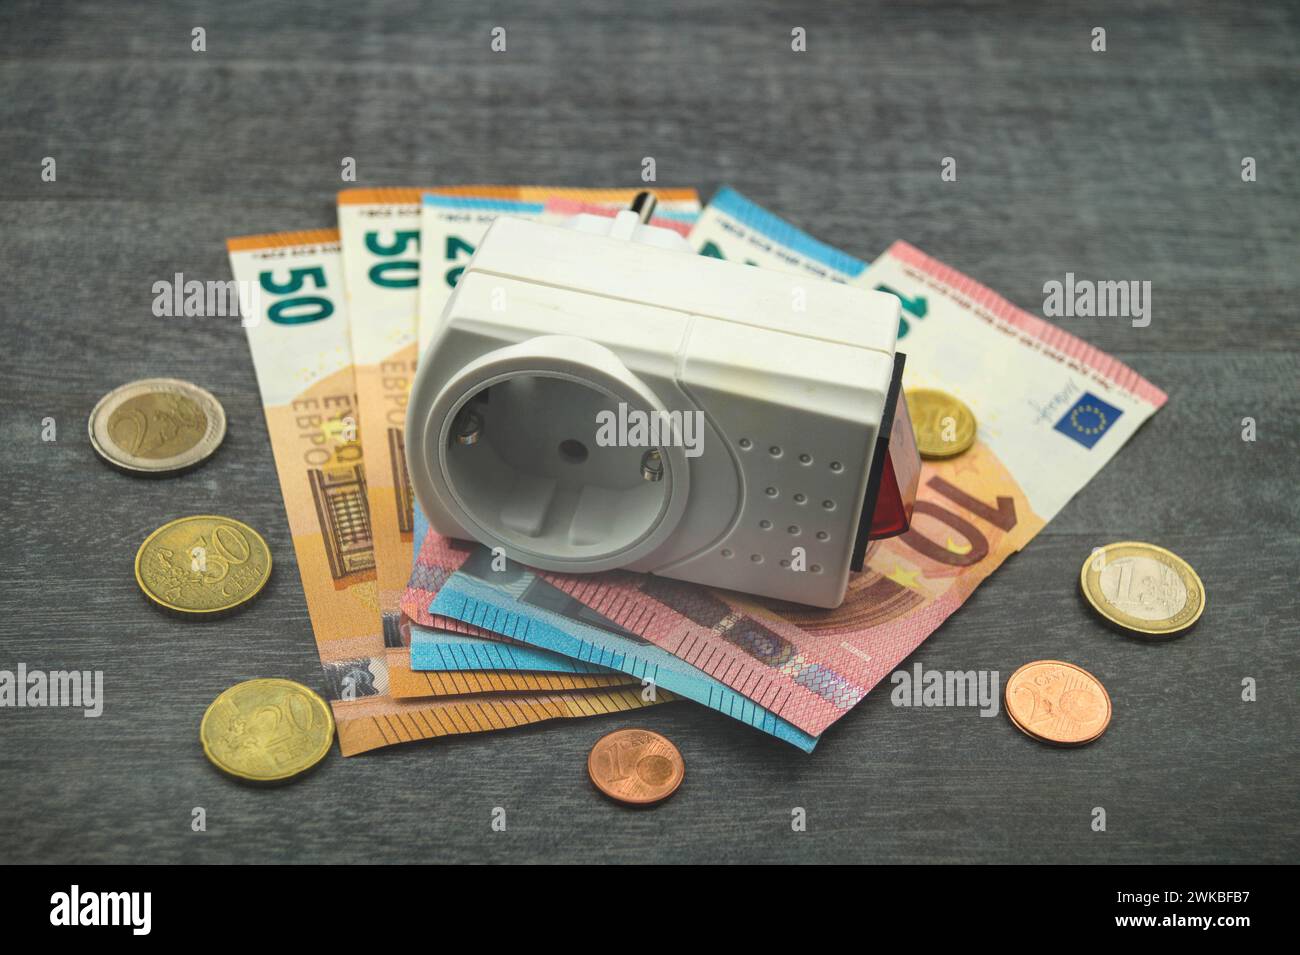 Socket et argent, image symbolique des coûts de l'électricité Banque D'Images